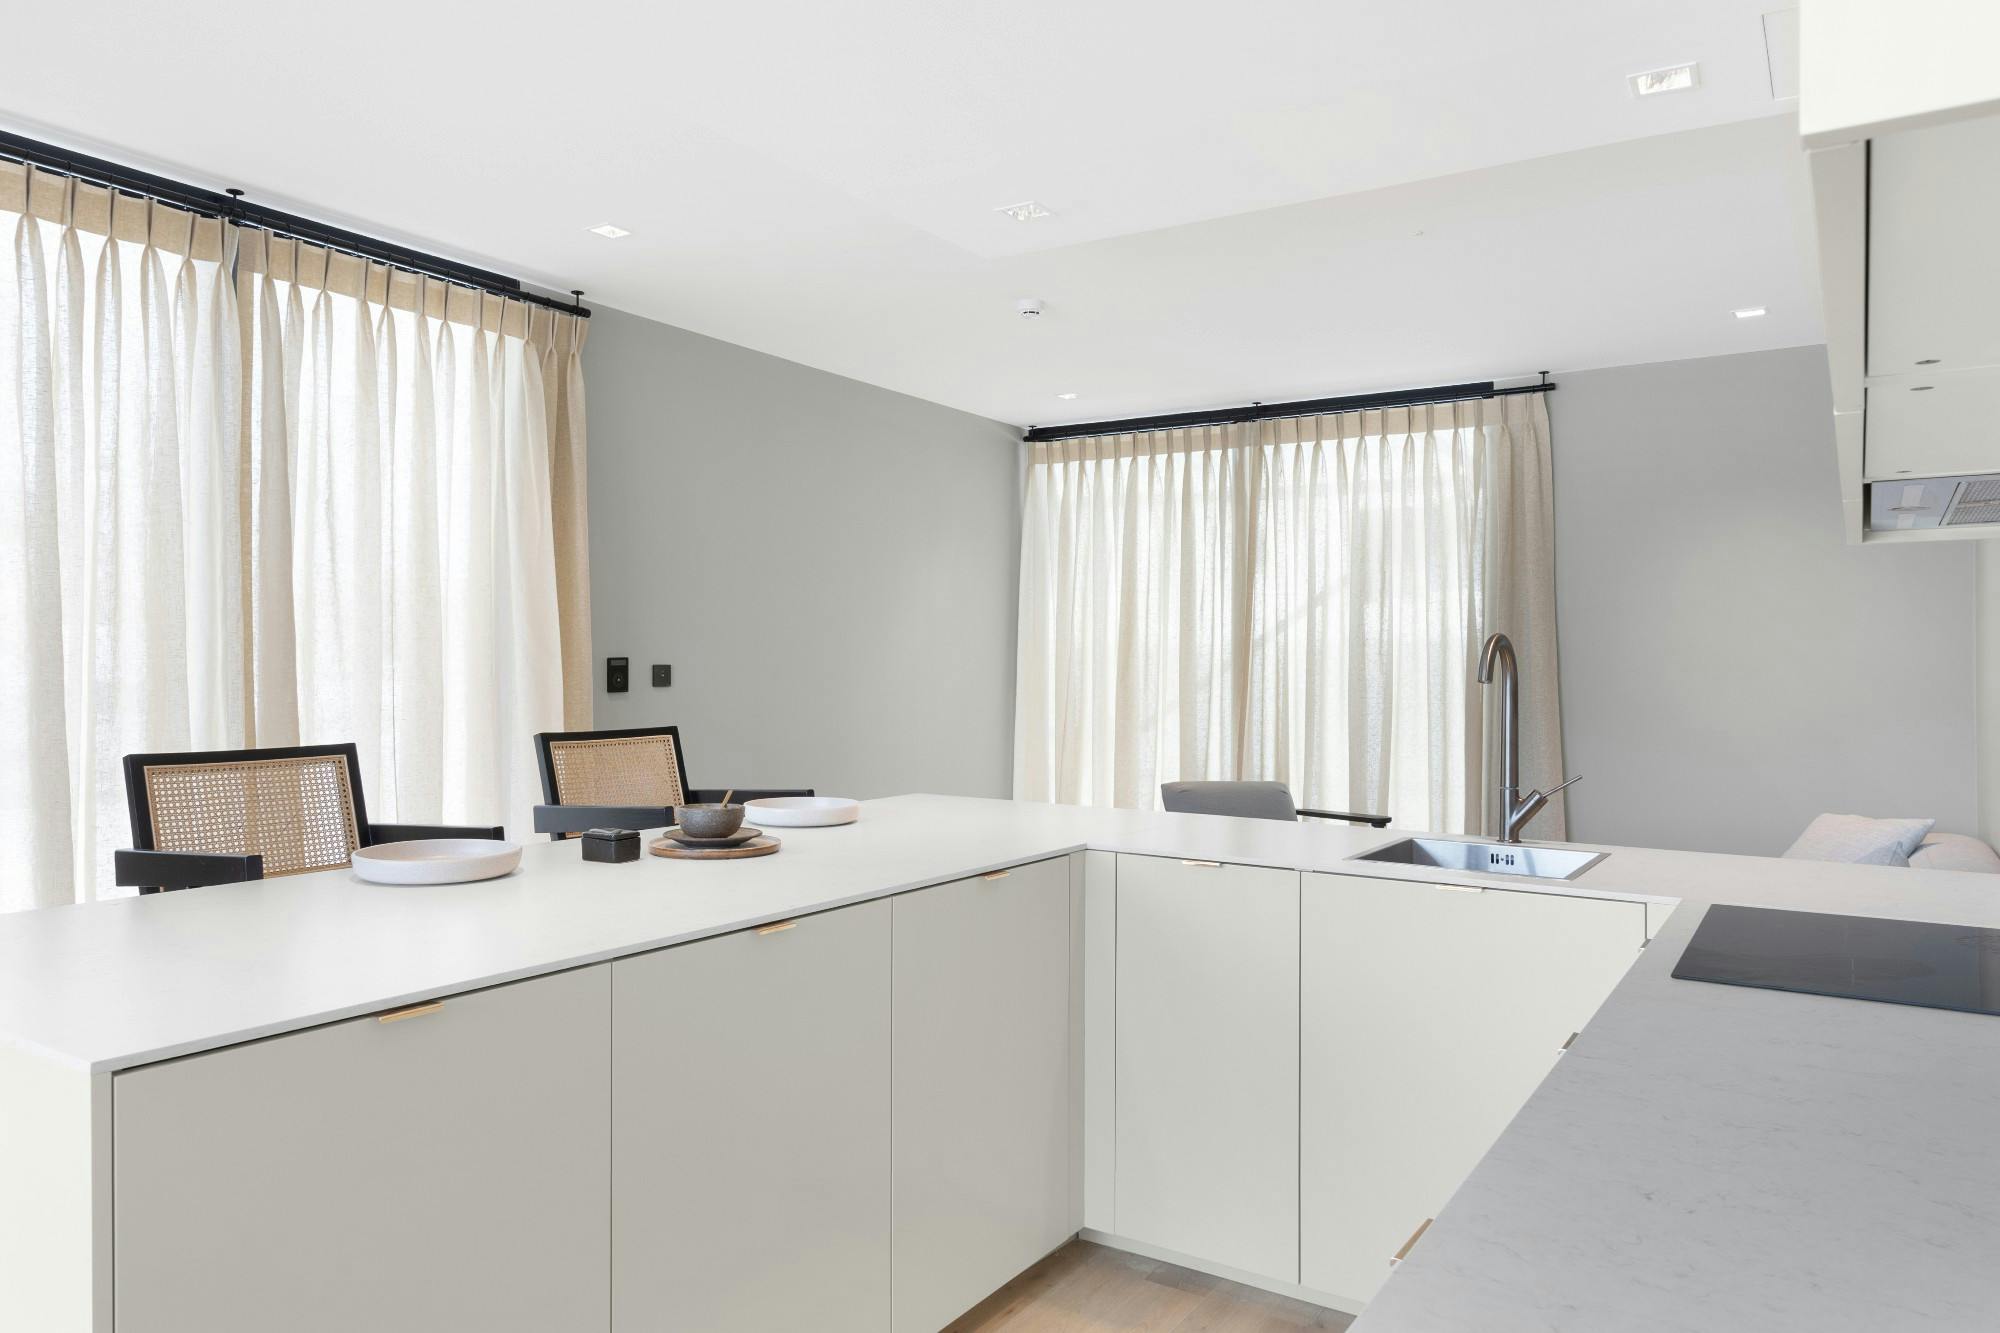 Numero immagine 40 della sezione corrente di A prefabricated home using Silestone for a luxurious and minimalist look di Cosentino Italia